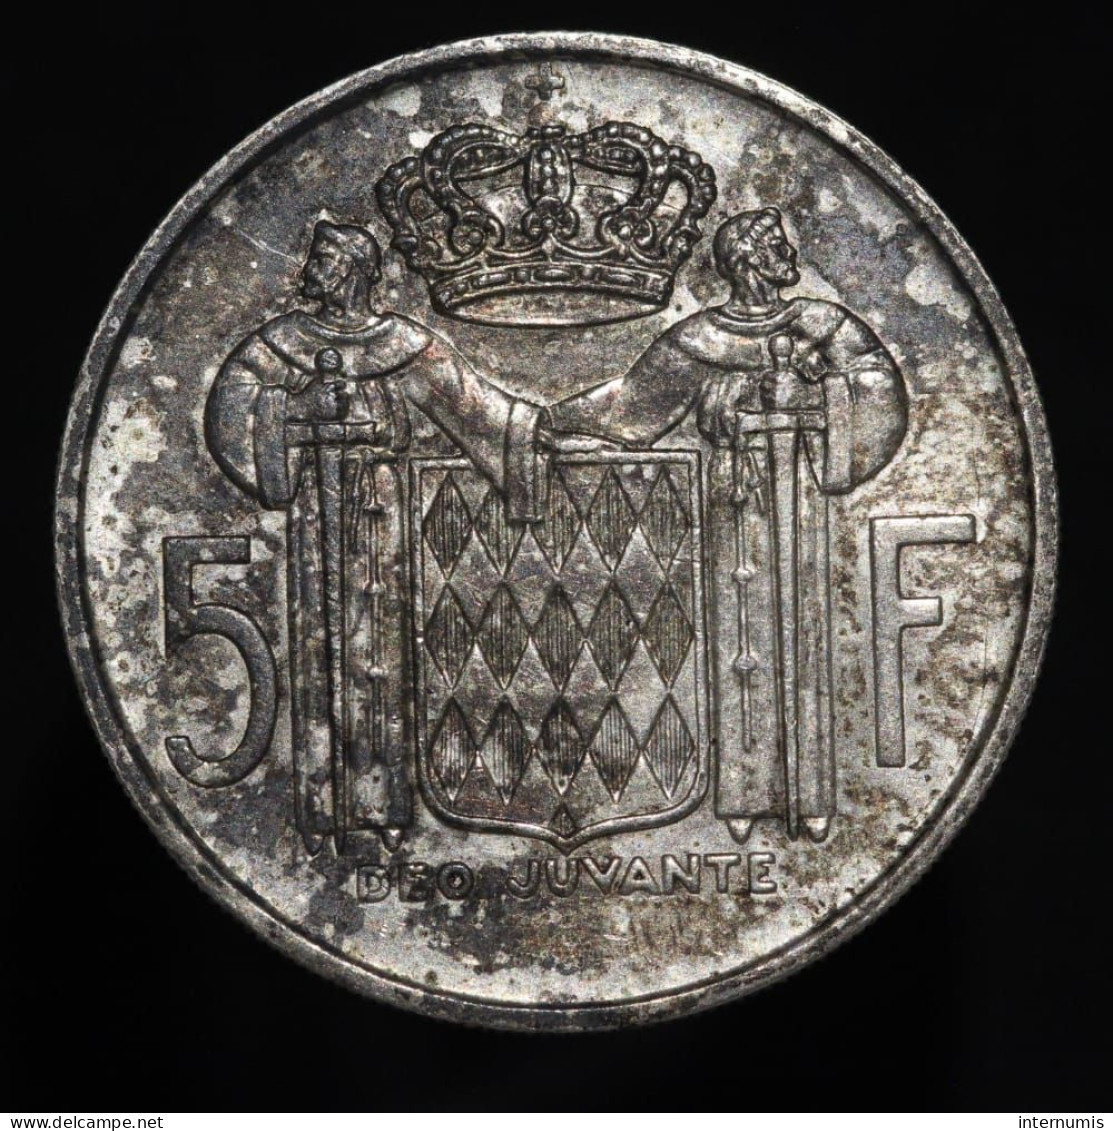 Monaco, Rainier III, 5 Francs, 1960, Argent (Silver), SPL (UNC), KM#141, G.MC152 - 1960-2001 Nouveaux Francs